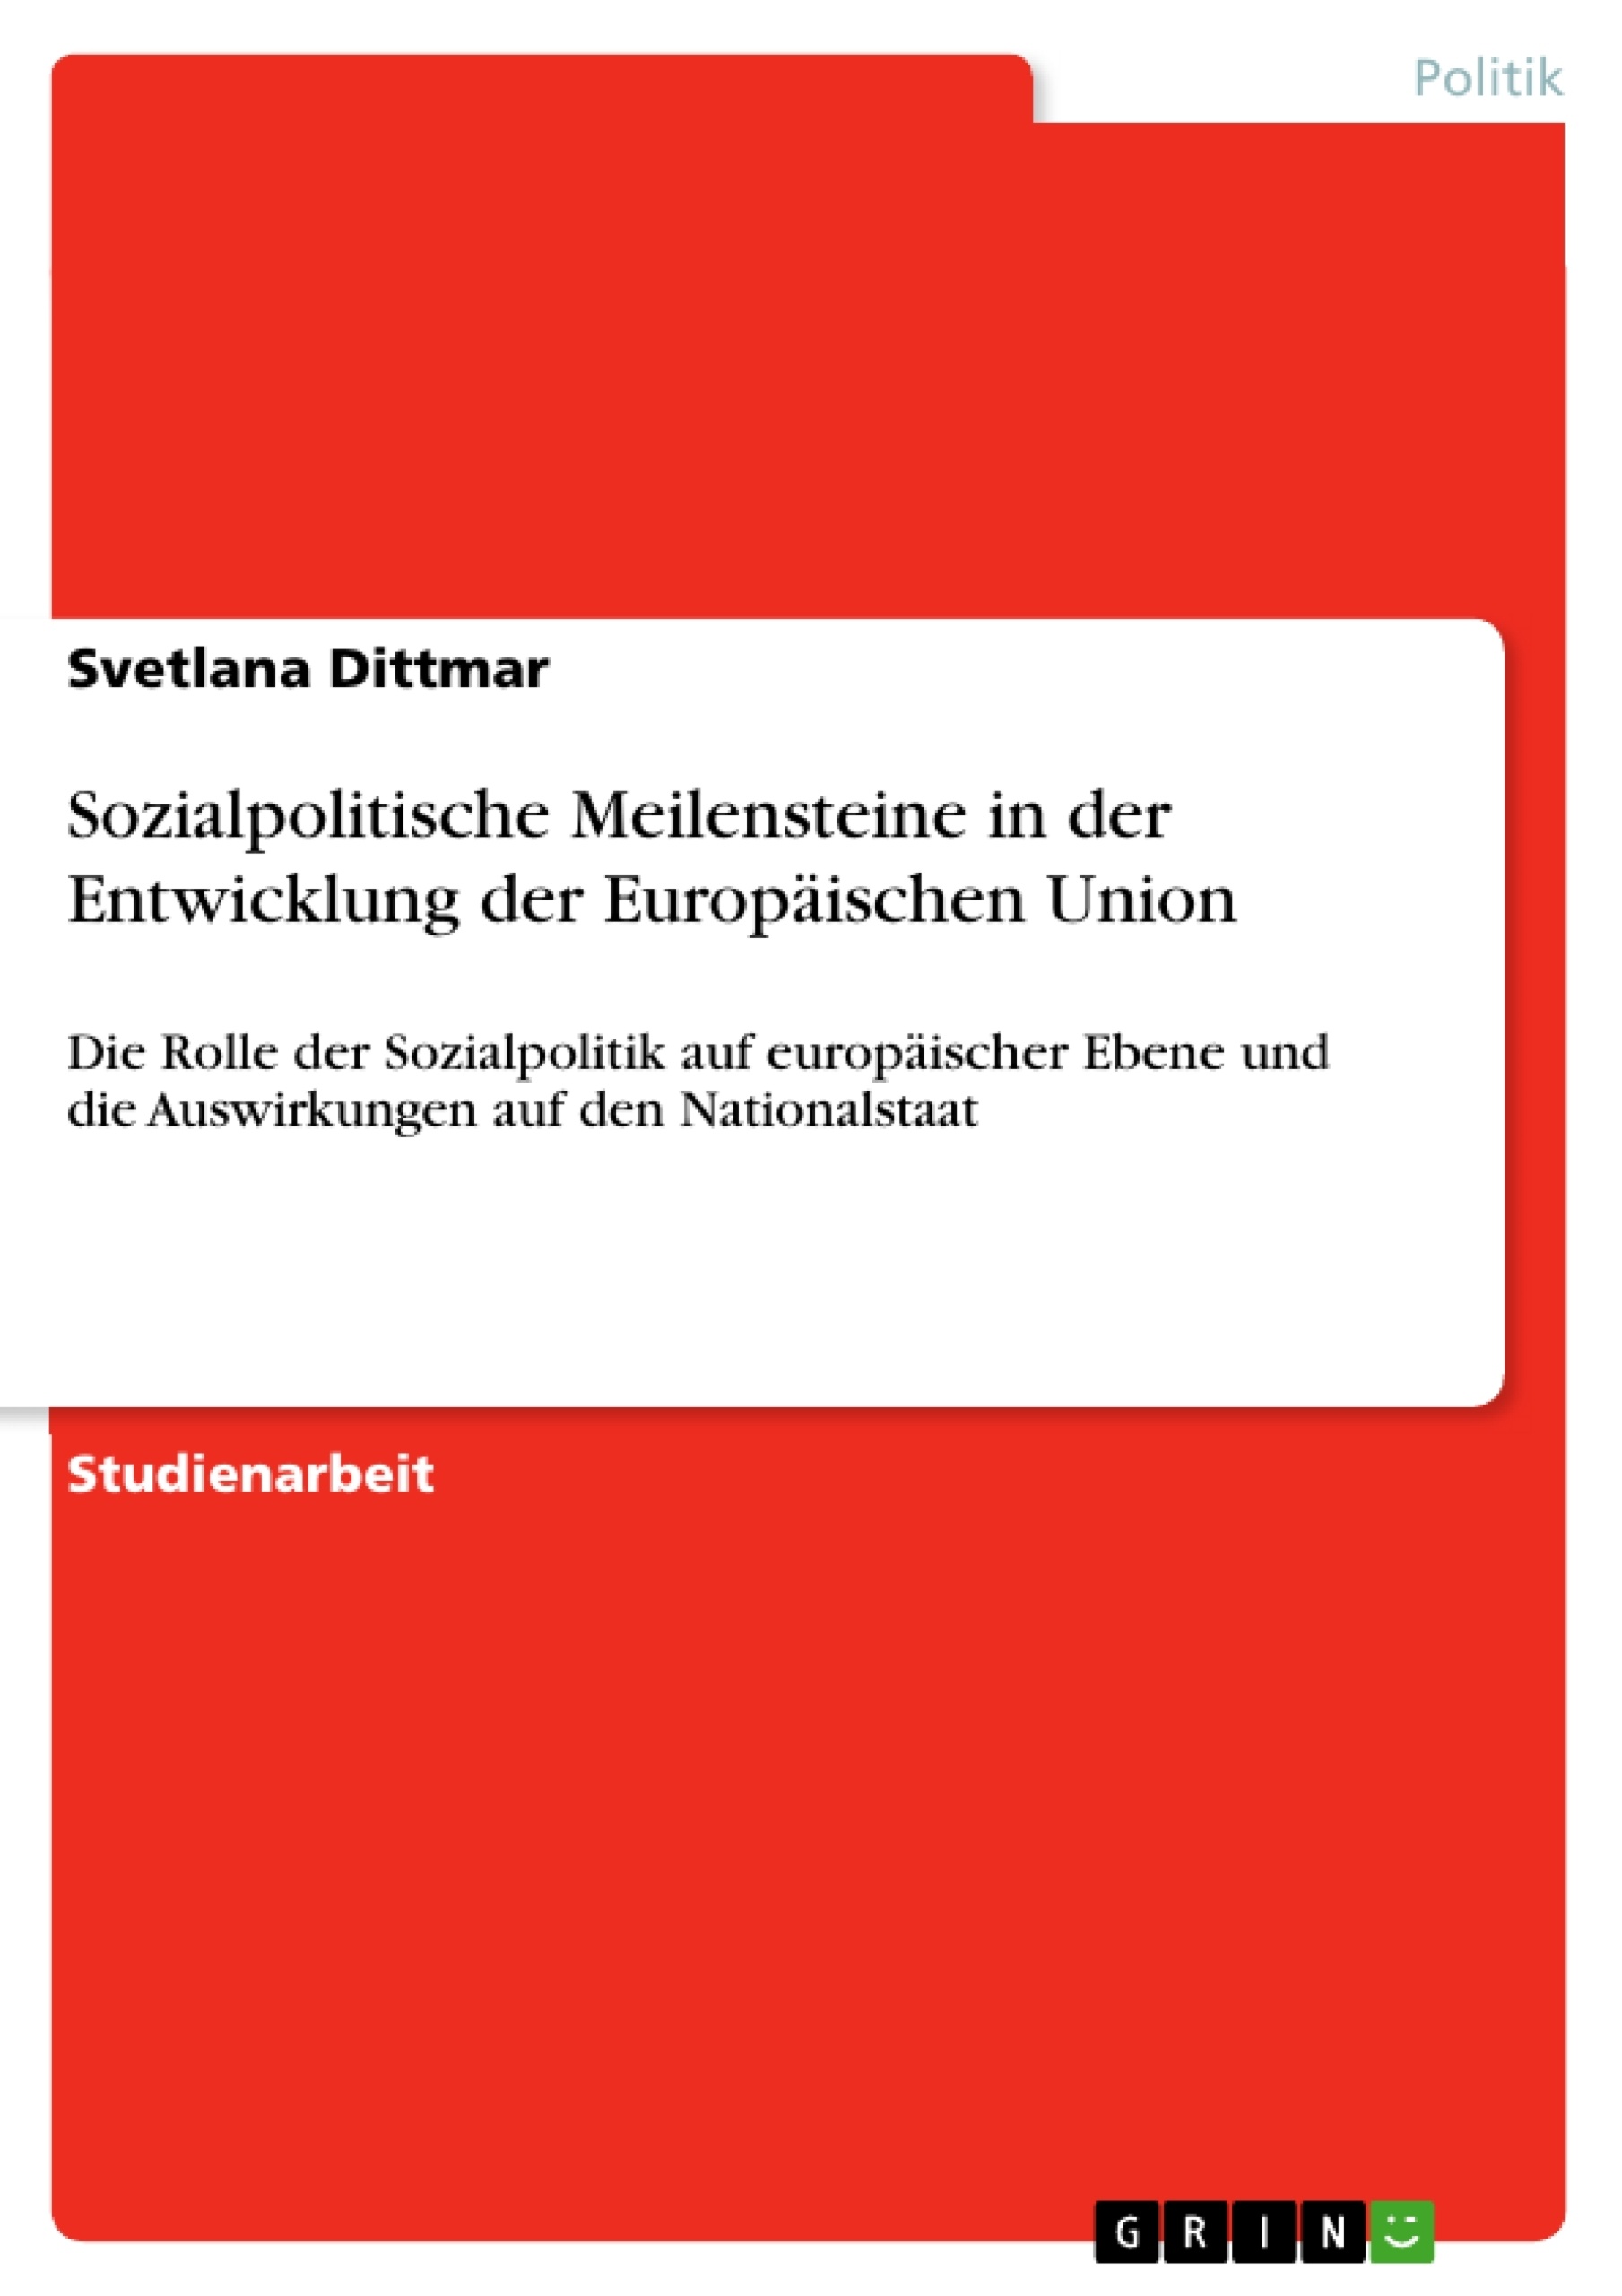 Title: Sozialpolitische Meilensteine in der Entwicklung der Europäischen Union